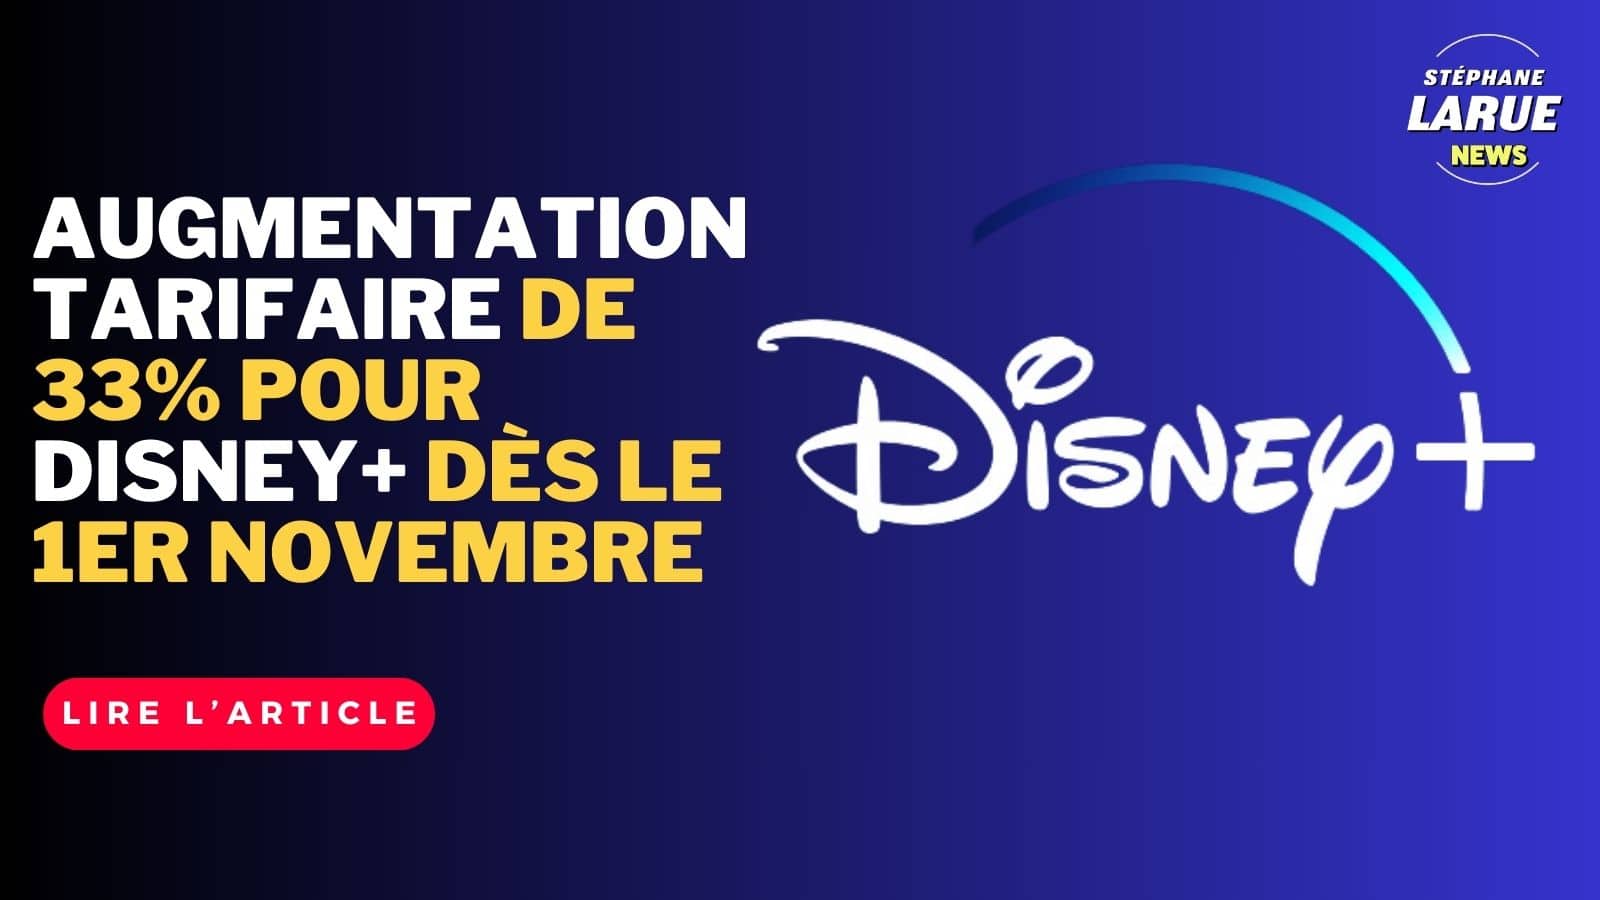 Augmentation tarifaire de 33% pour Disney+ dès le 1er novembre